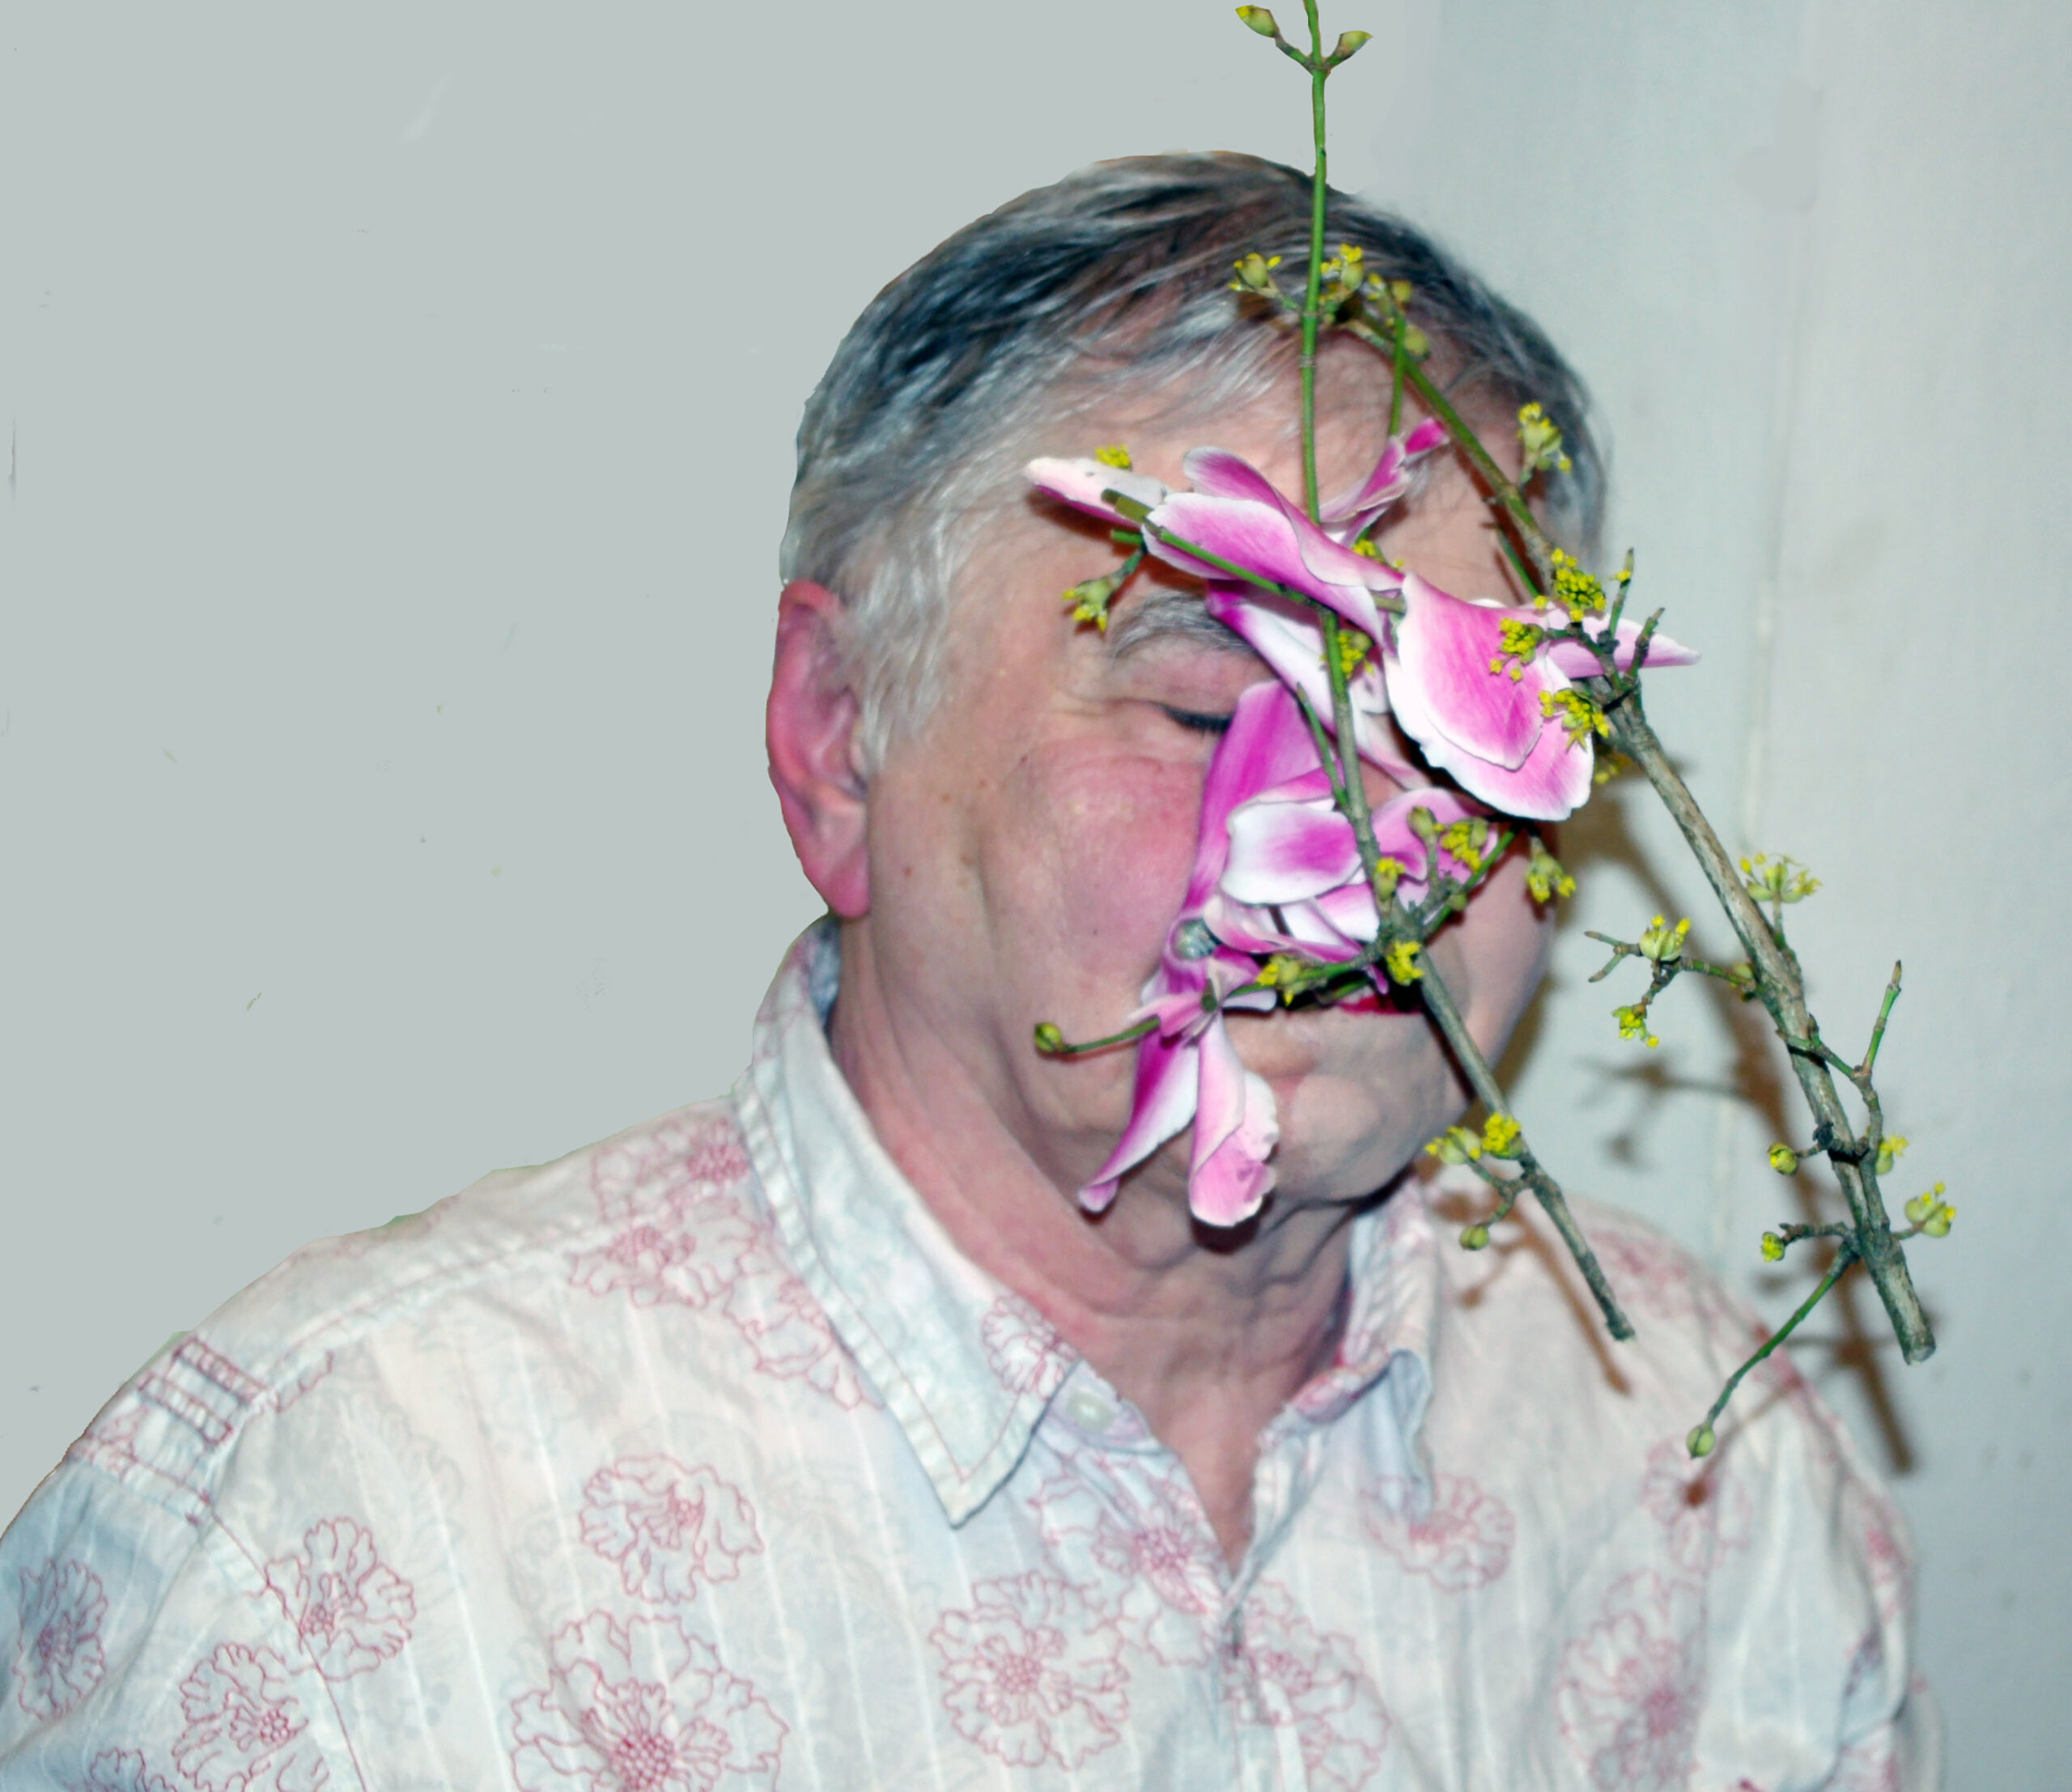 Portret artysty Jana Rylke. Mężczyzna o siwych włosach twaz ma zasłoniętą różowymi kwiatami.